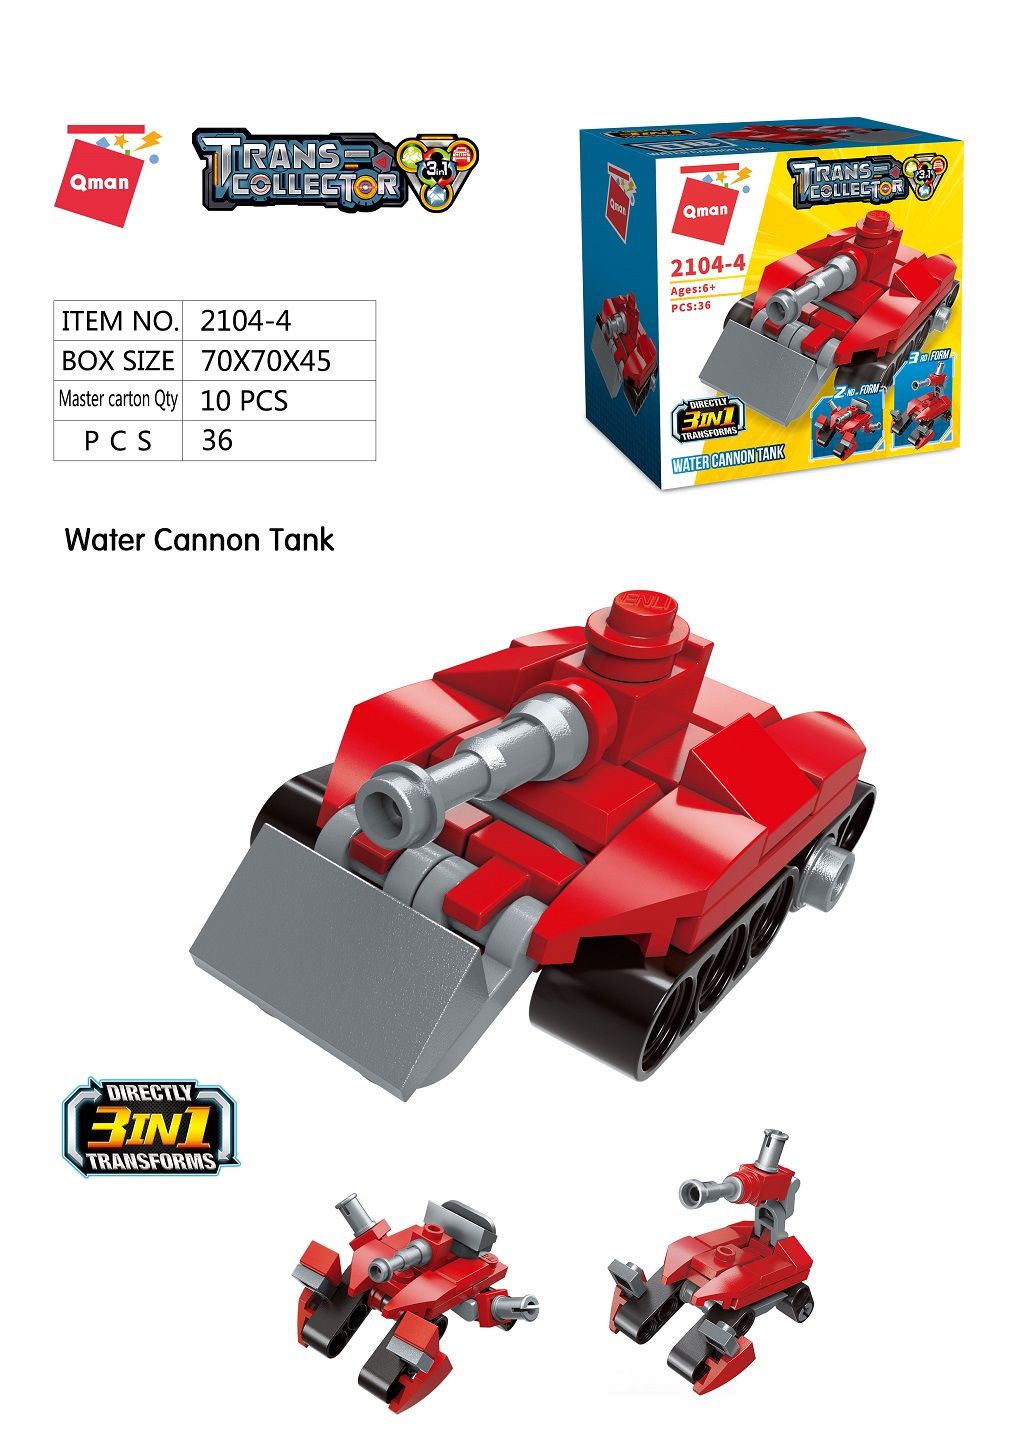 Dřevěné hračky Qman Trans Collector 3v1 2104-4 Tank s vodním dělem 3v1